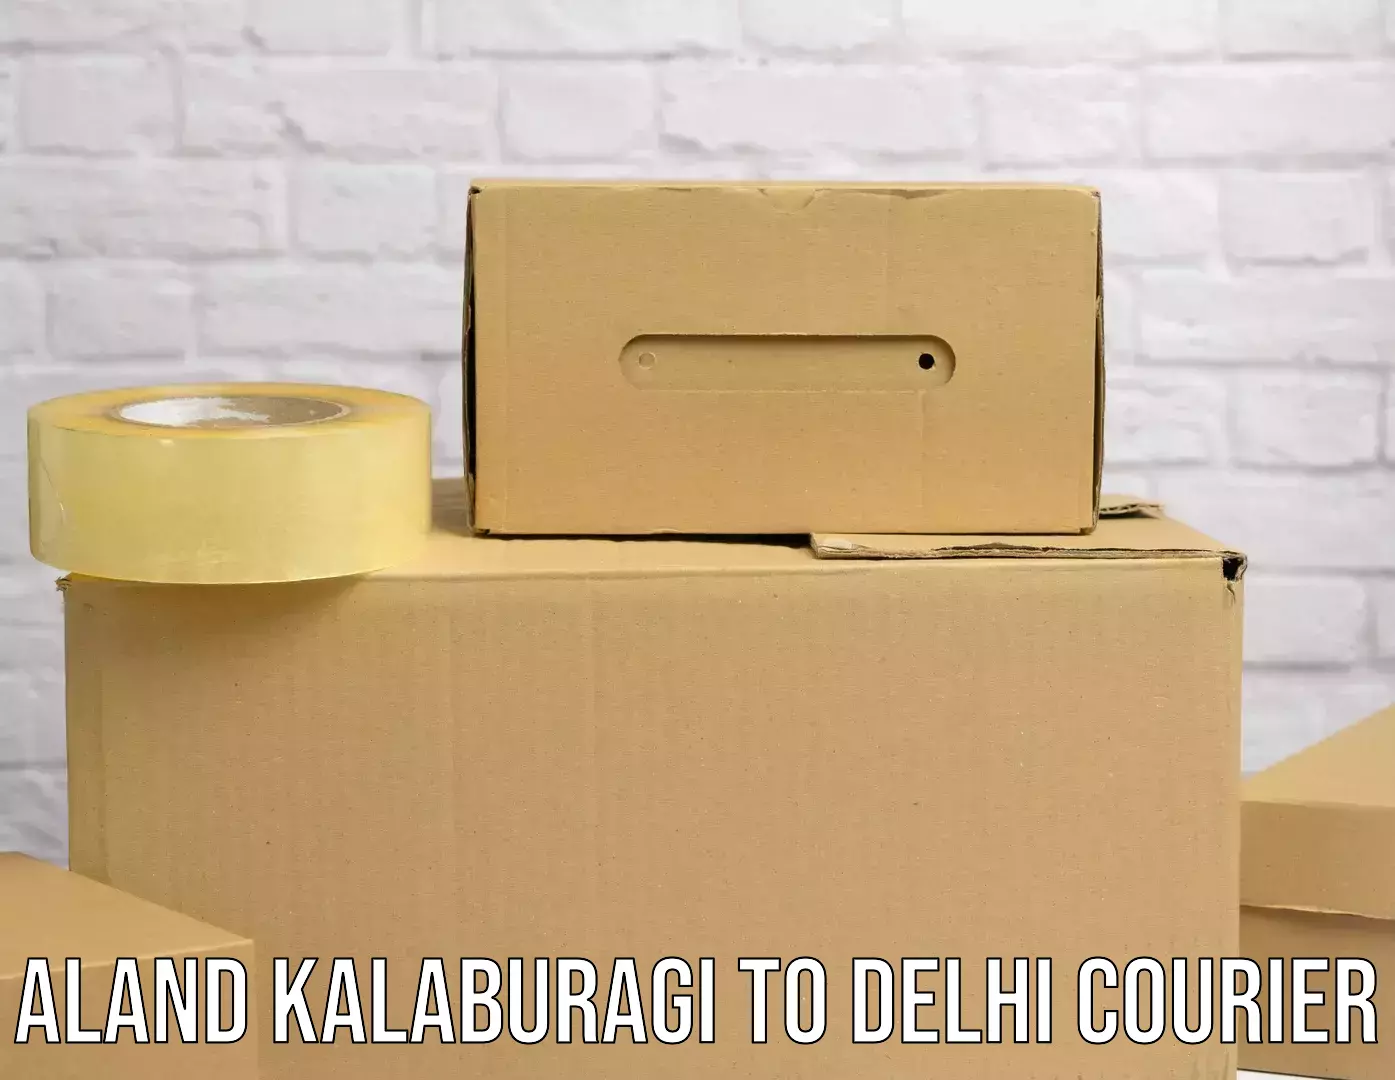 Efficient order fulfillment Aland Kalaburagi to Delhi